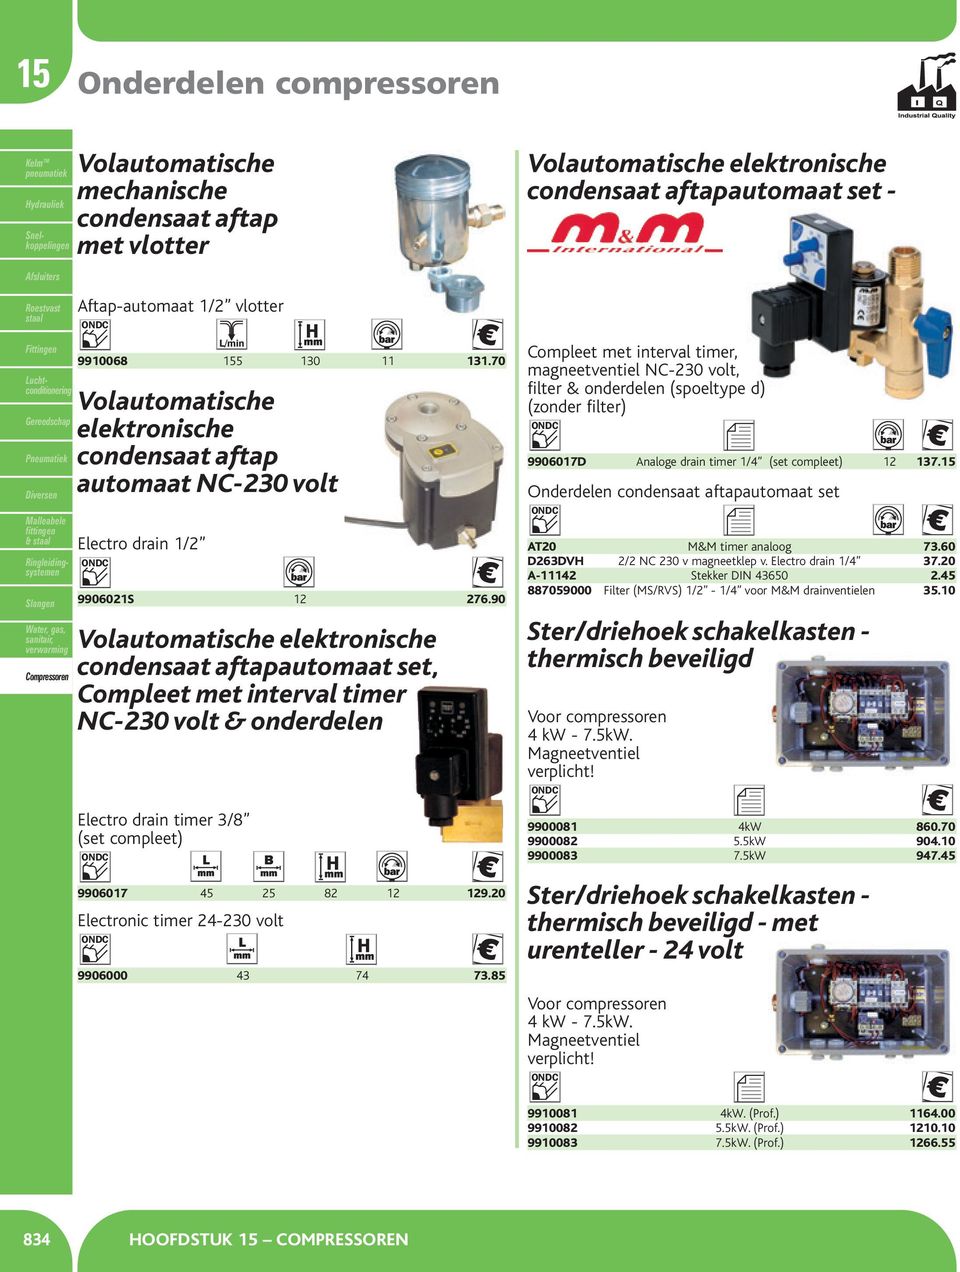 90 Volautomatische elektronische condensaat aftapautomaat set, Compleet met interval timer NC-230 volt & onderdelen Electro drain timer 3/8 (set compleet) 9906017 45 25 82 12 129.